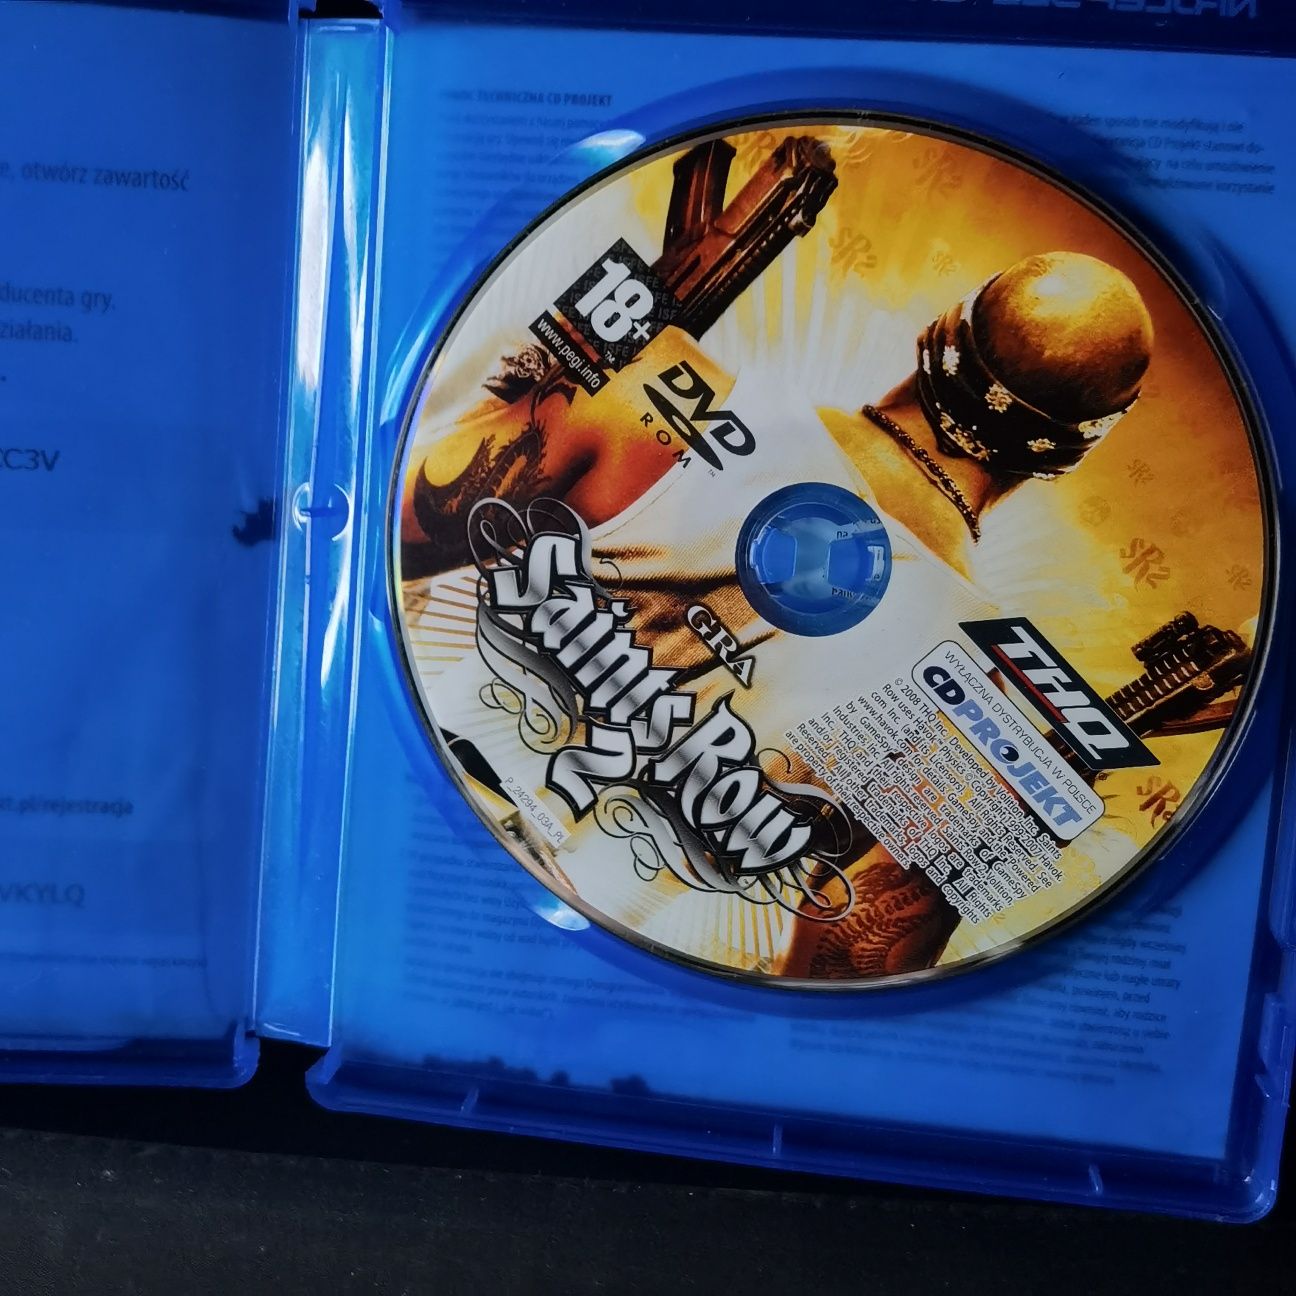 Saints Row 2 PC Polska edycja